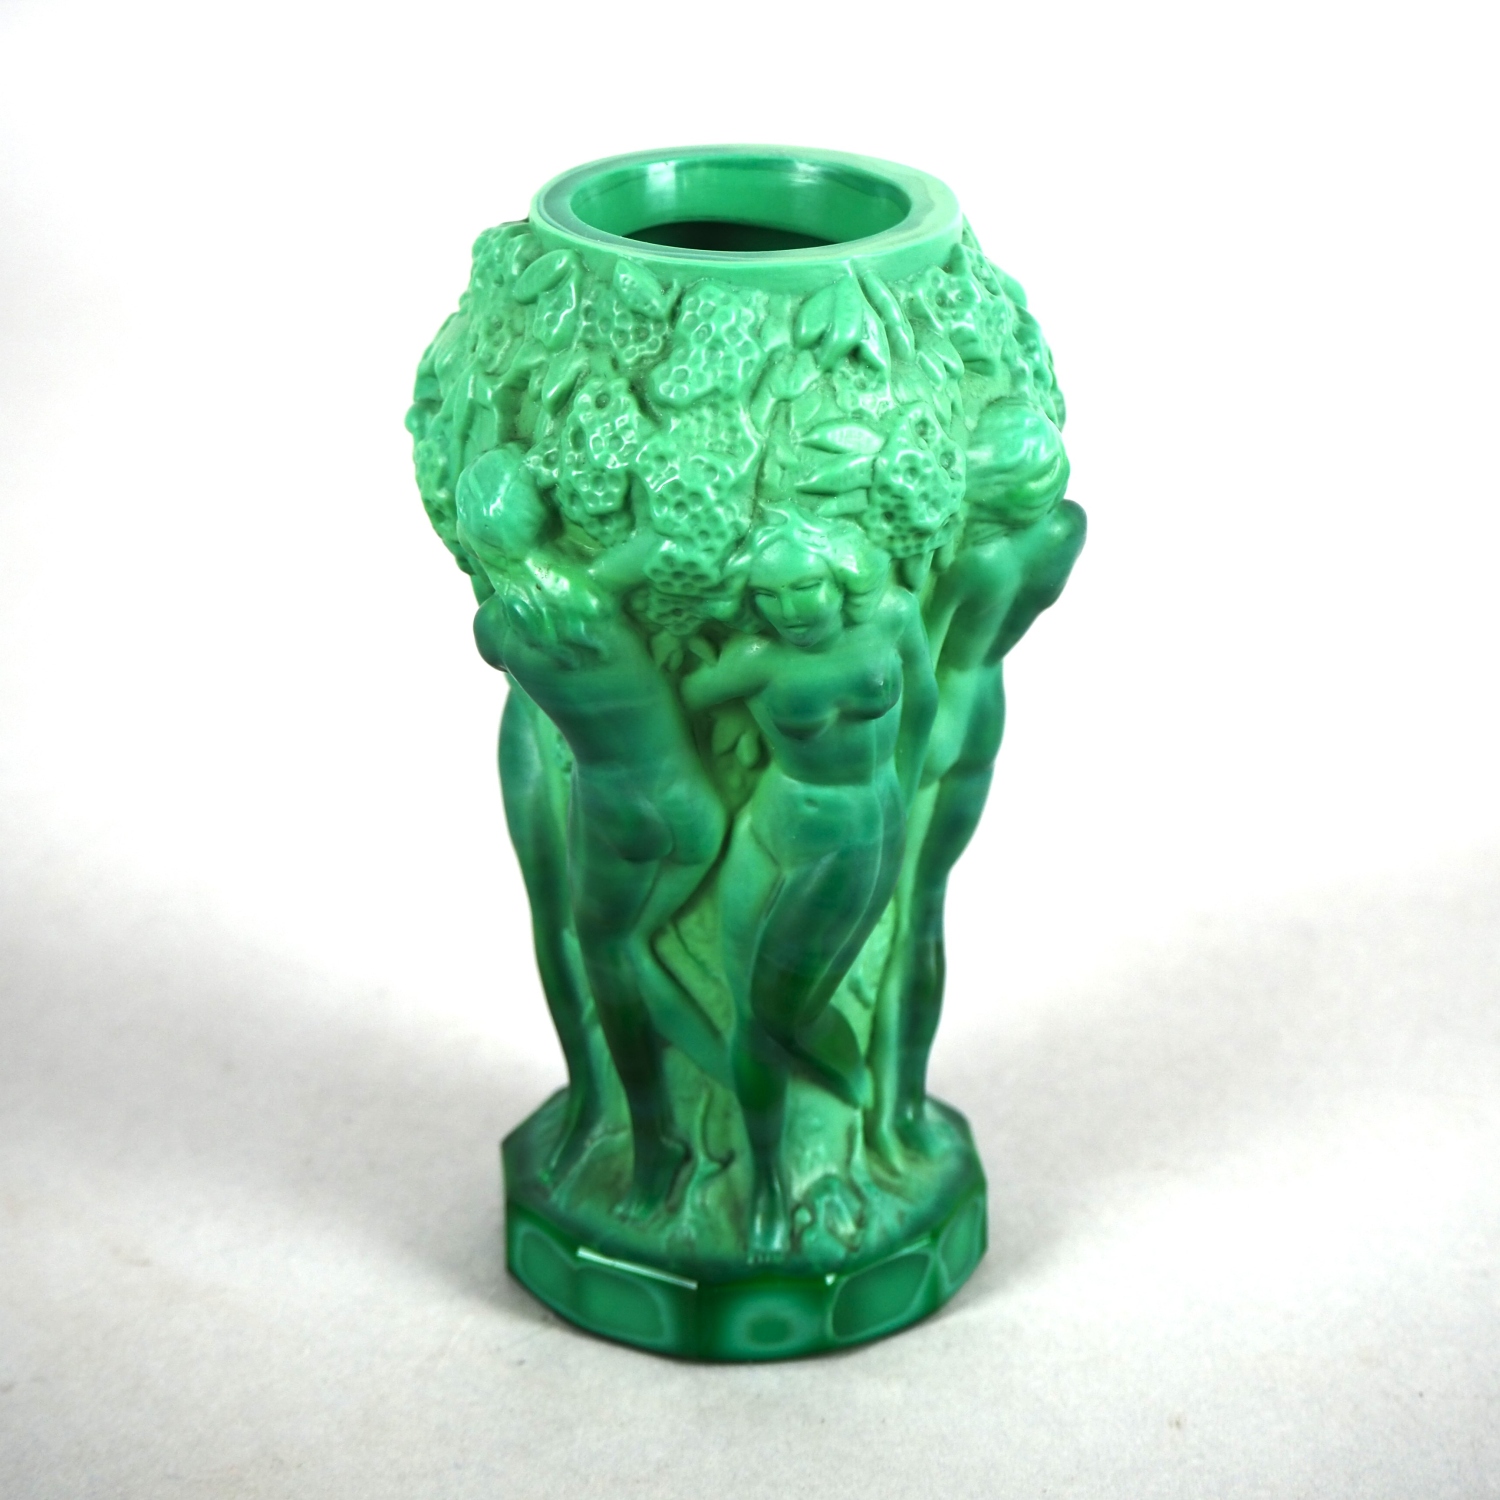 Malachite glass vase, probably Gablonz around 1930